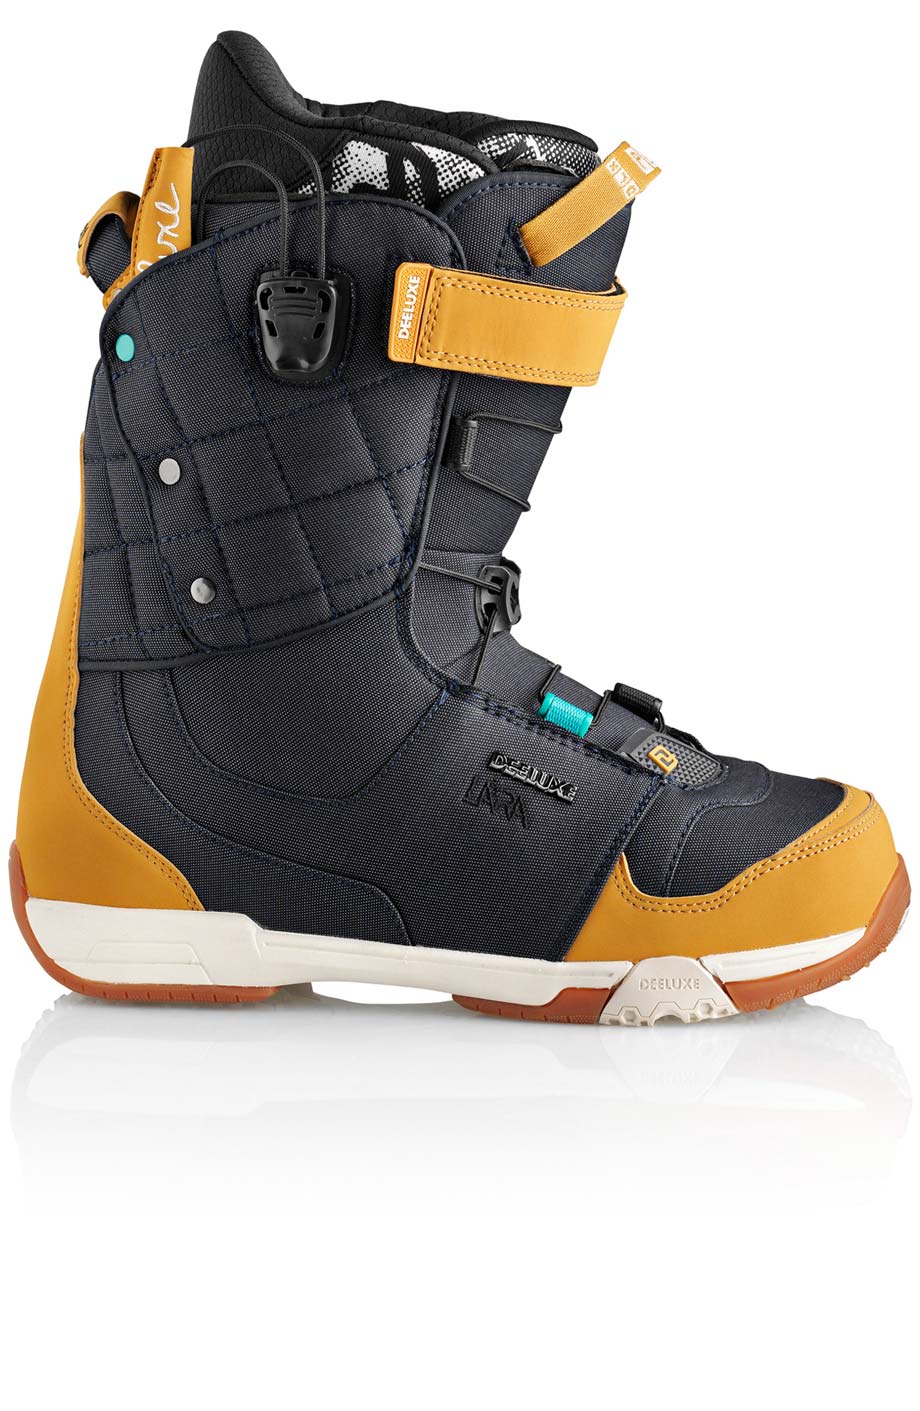 Ботинки сноубордические Deeluxe Ray Lara  размер 25,5 denim (темный джинс + беж кож.зам) 2013 год